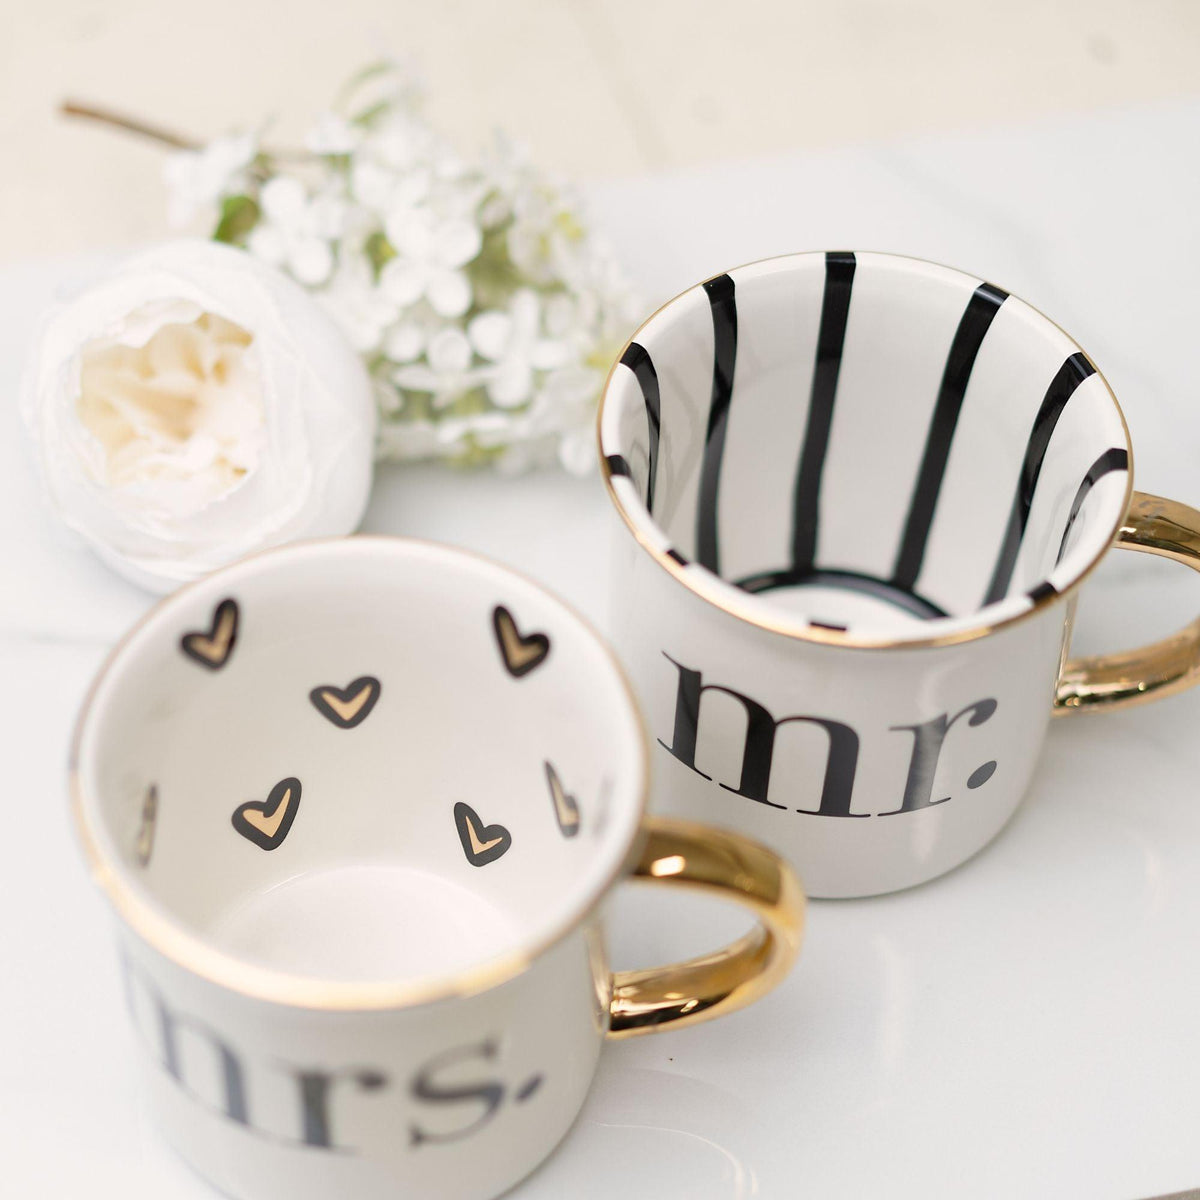 Set of 2 Mr and Mrs Mugs, Wedding Mug Set, His and Hers Mugs